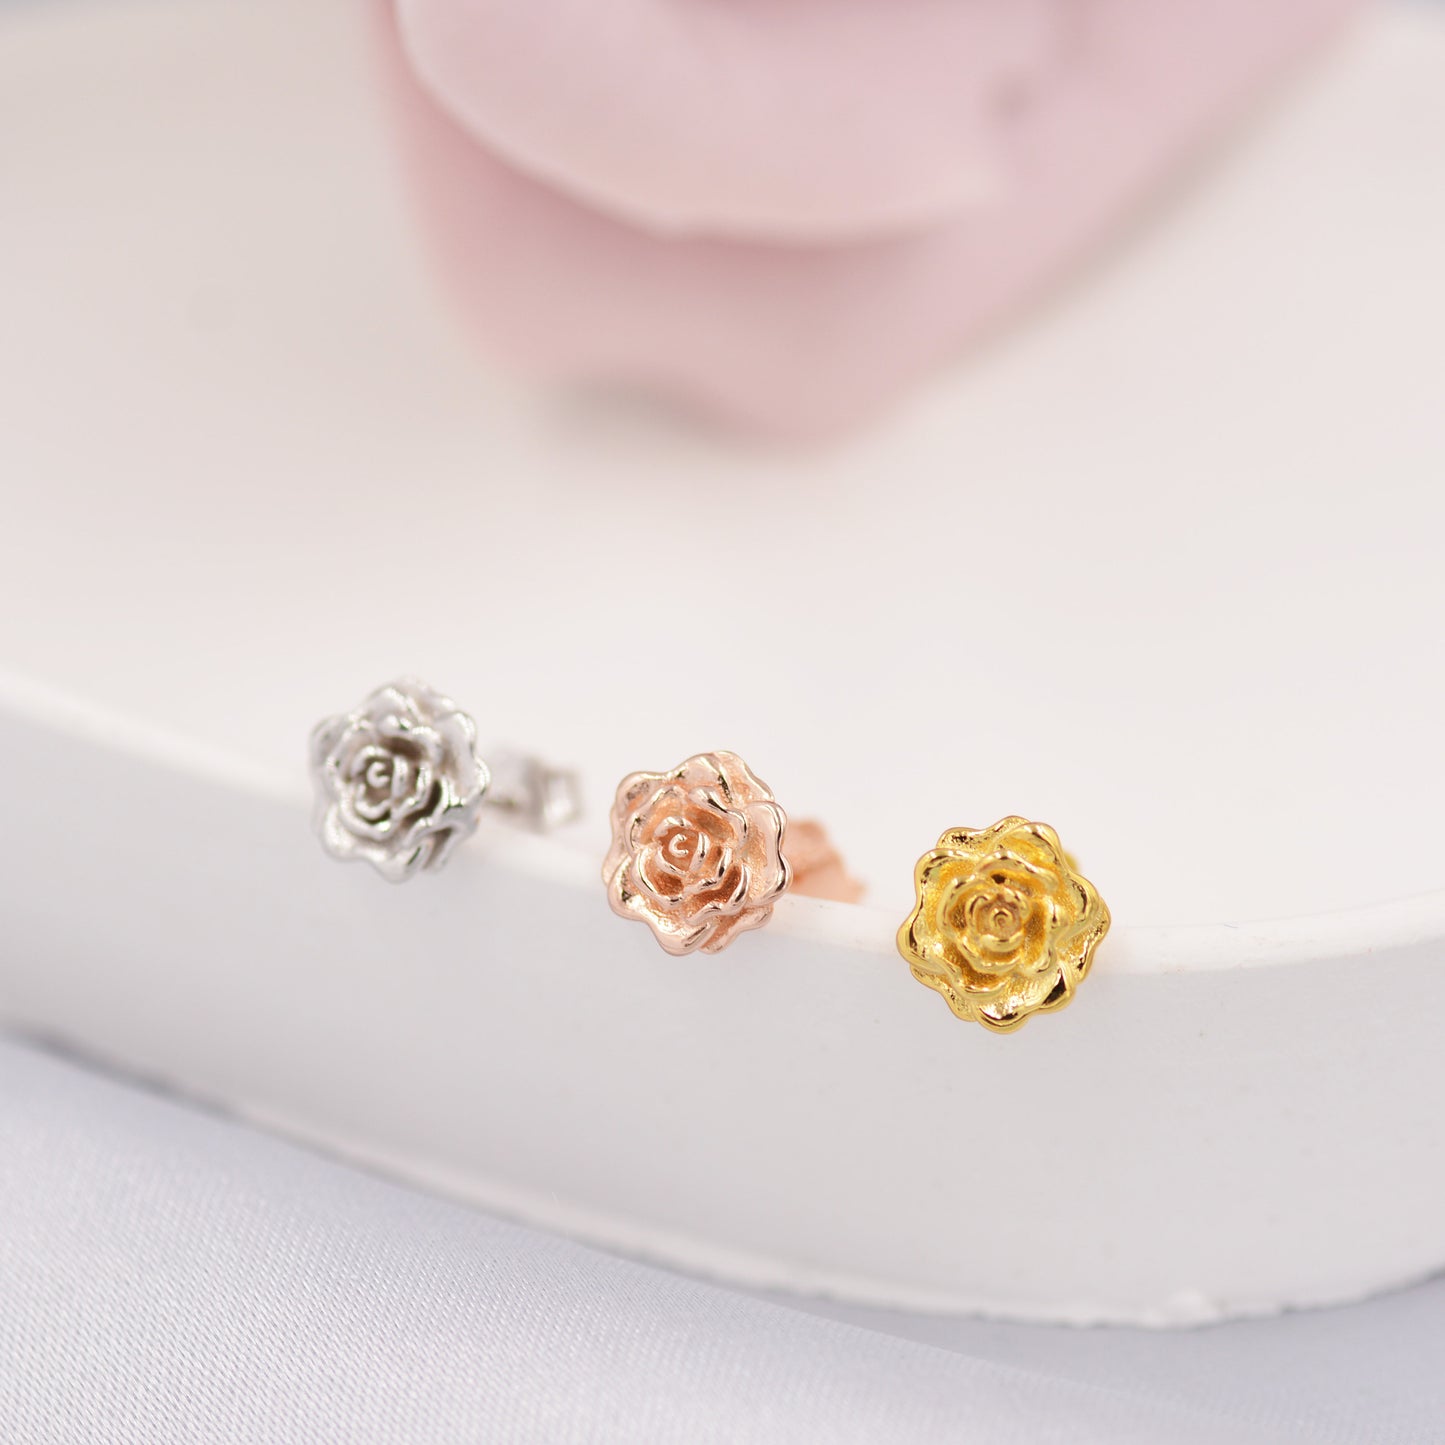 Sterling Silver Rose Earrings, Silver, Gold or Rose Gold, Rose Stud Earrings, Petite Flower Blossom Earrings, Nature Inspired